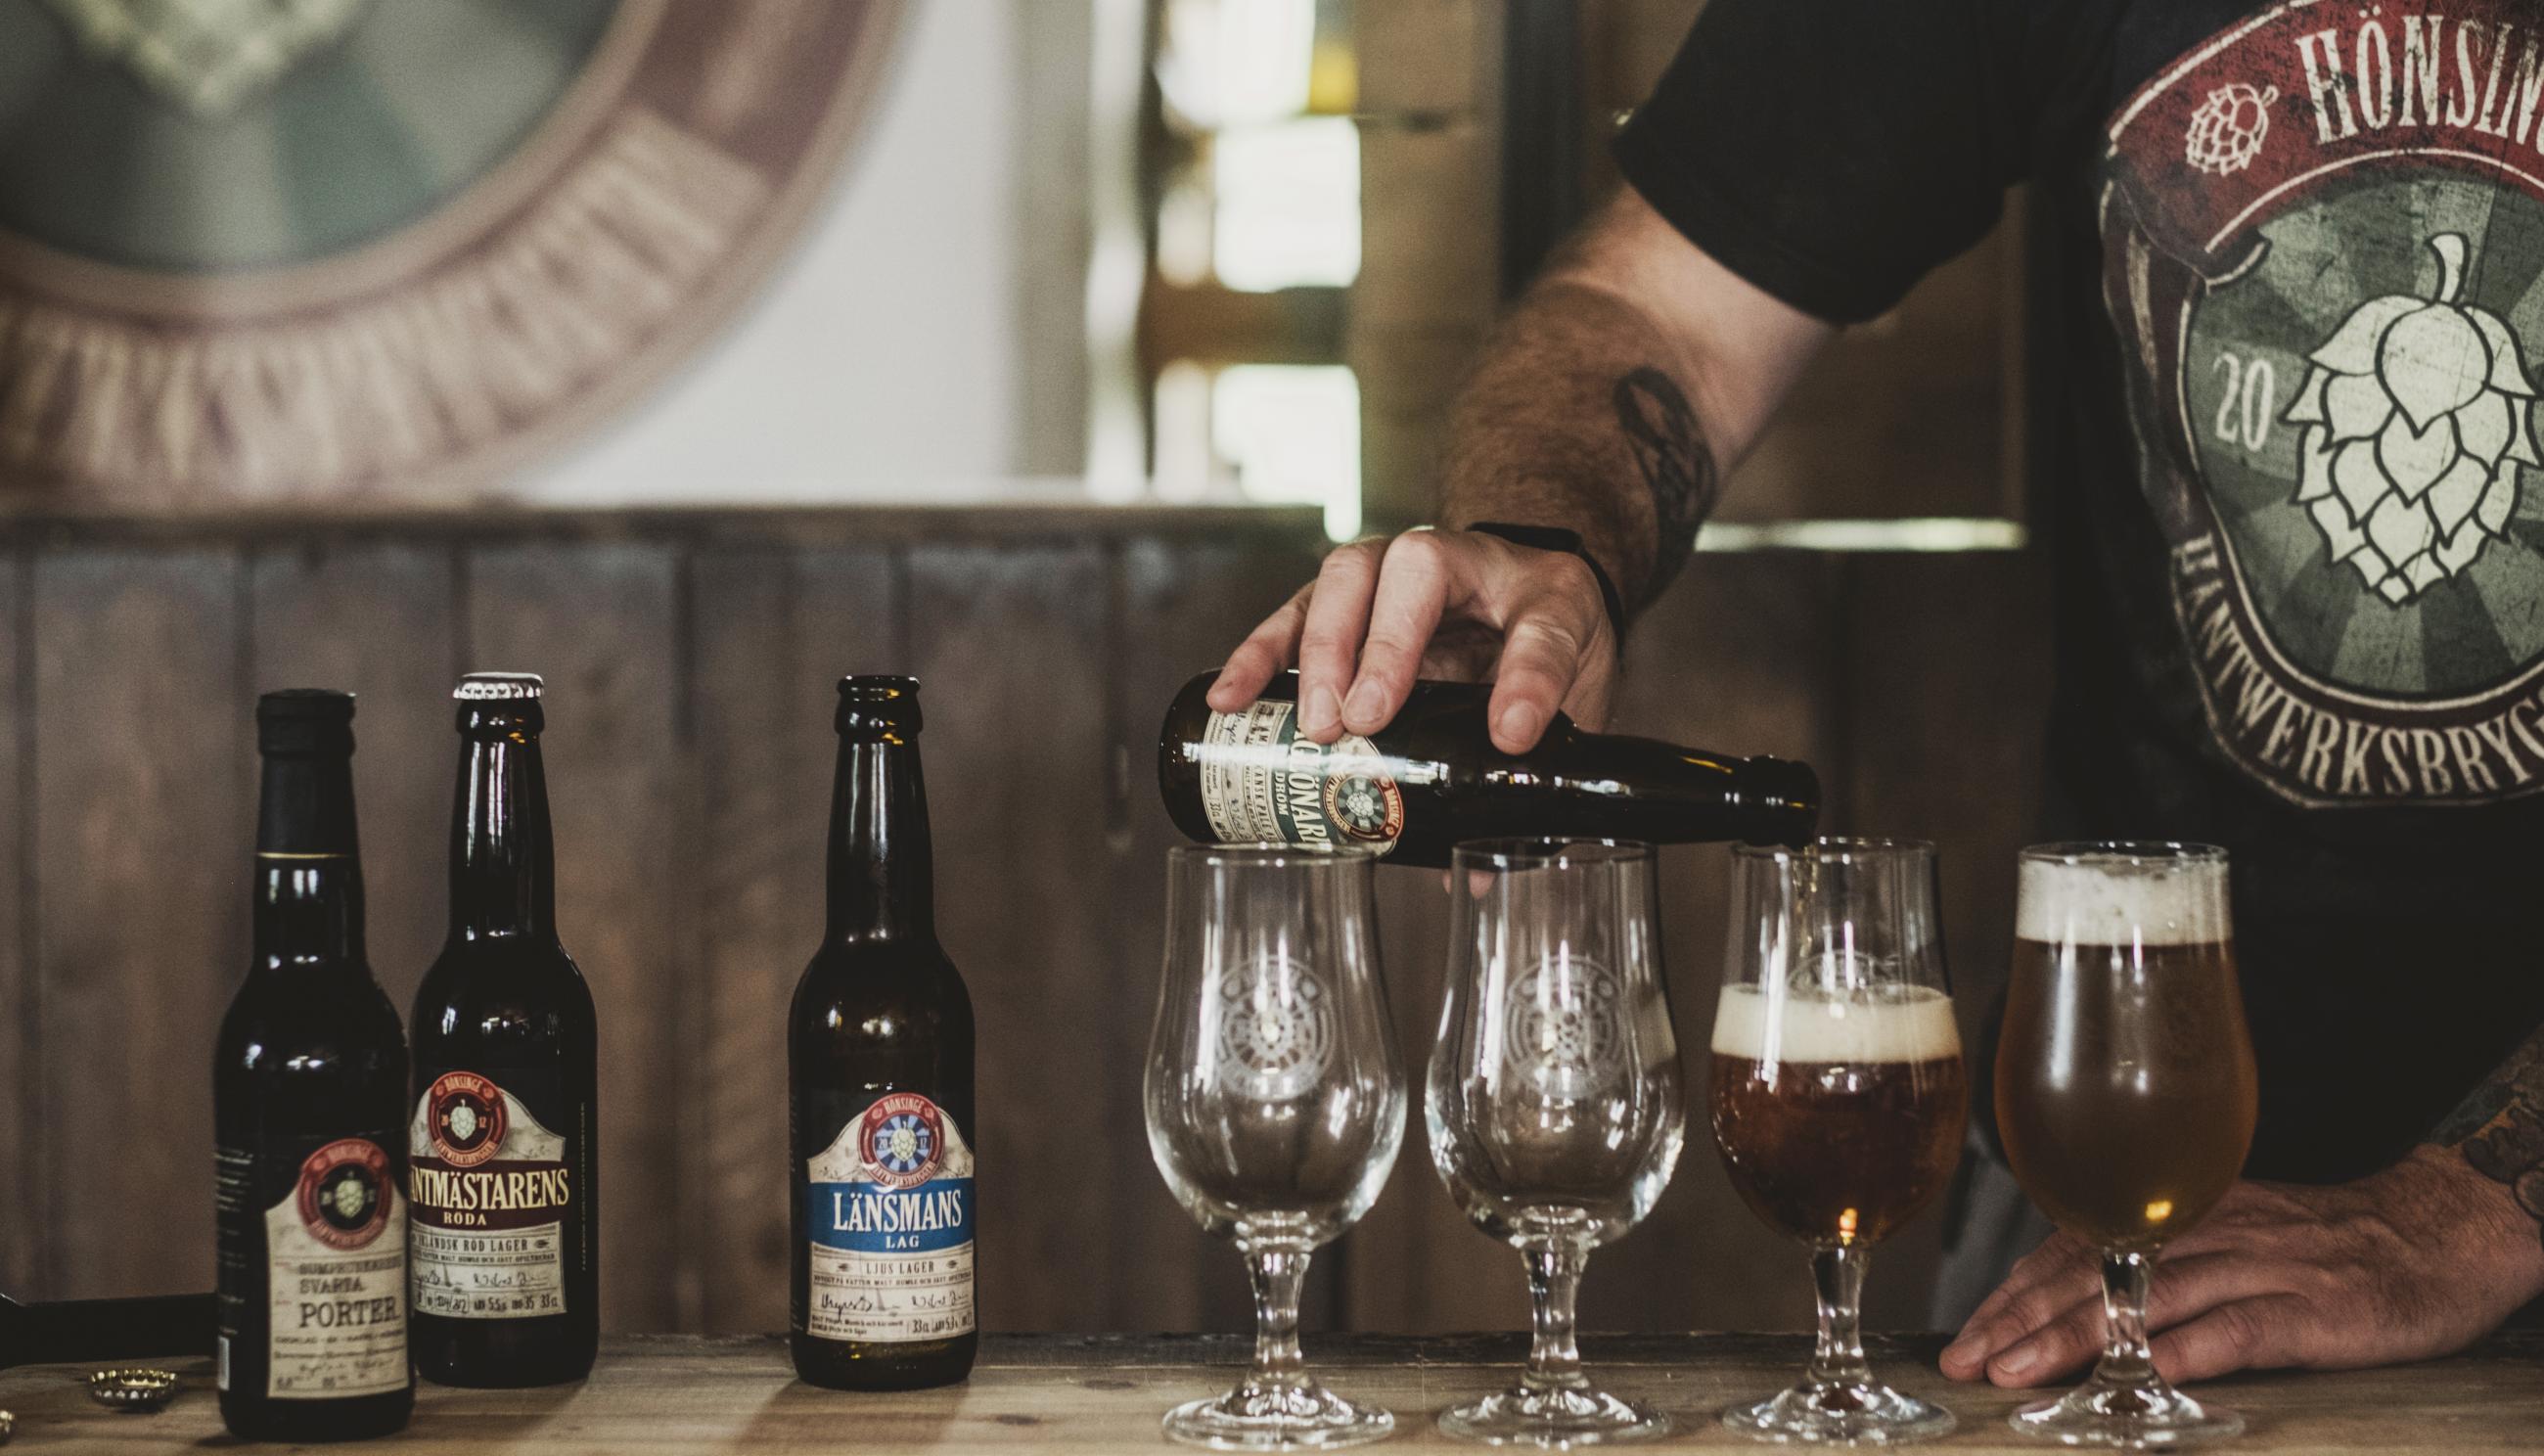 In der Brauerei Hönsinge Bryggeri schenkt ein Mann Bier in Gläser ein.